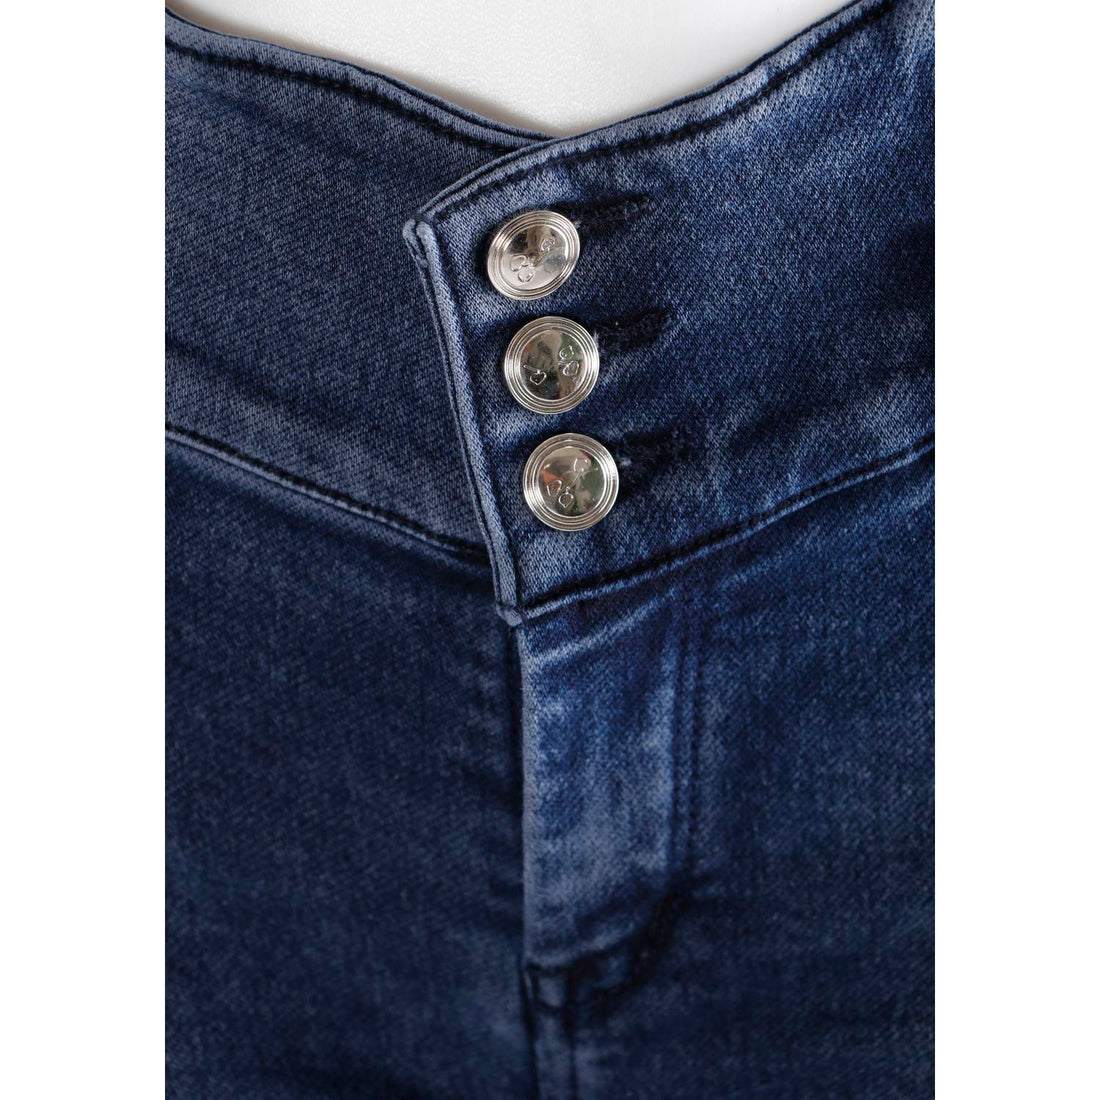 Women Navy Blue Pencil Cut 3 Button Jeans